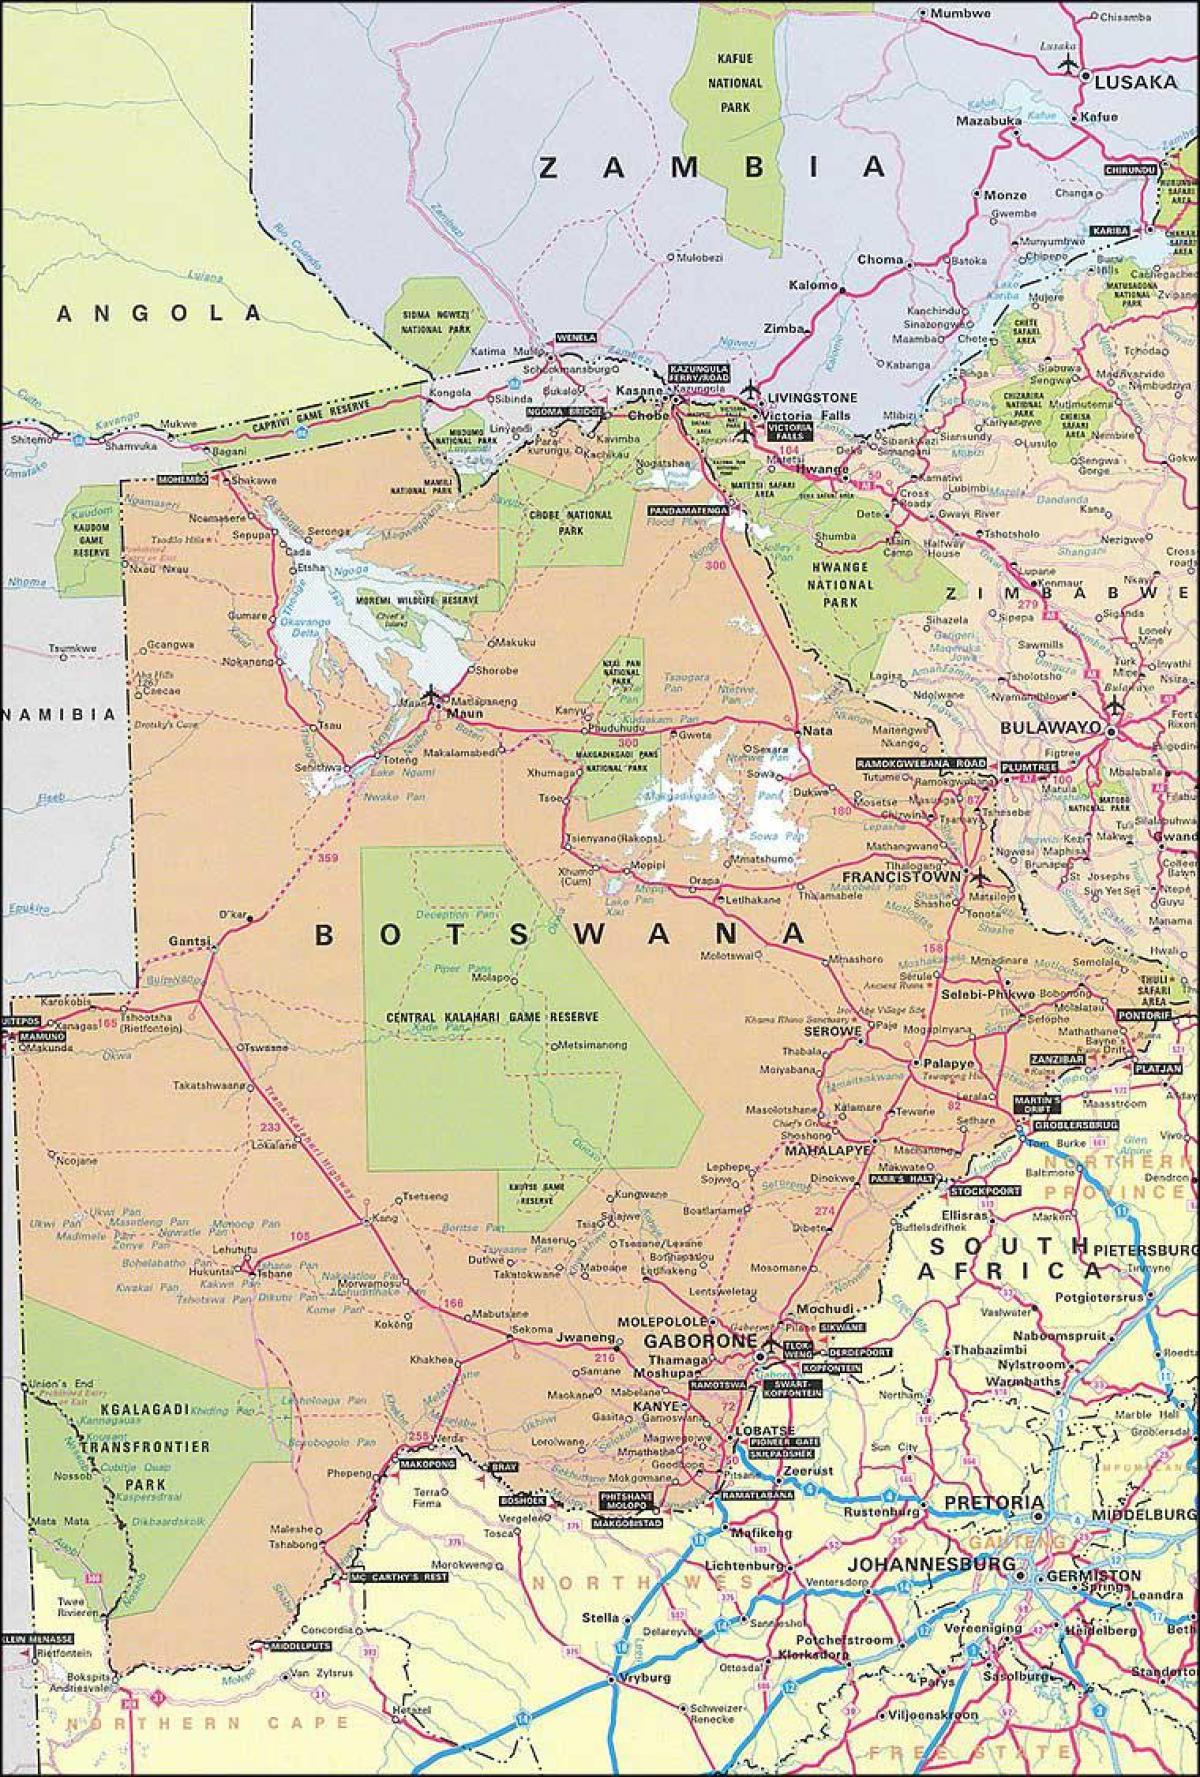 Botsvana haritası 